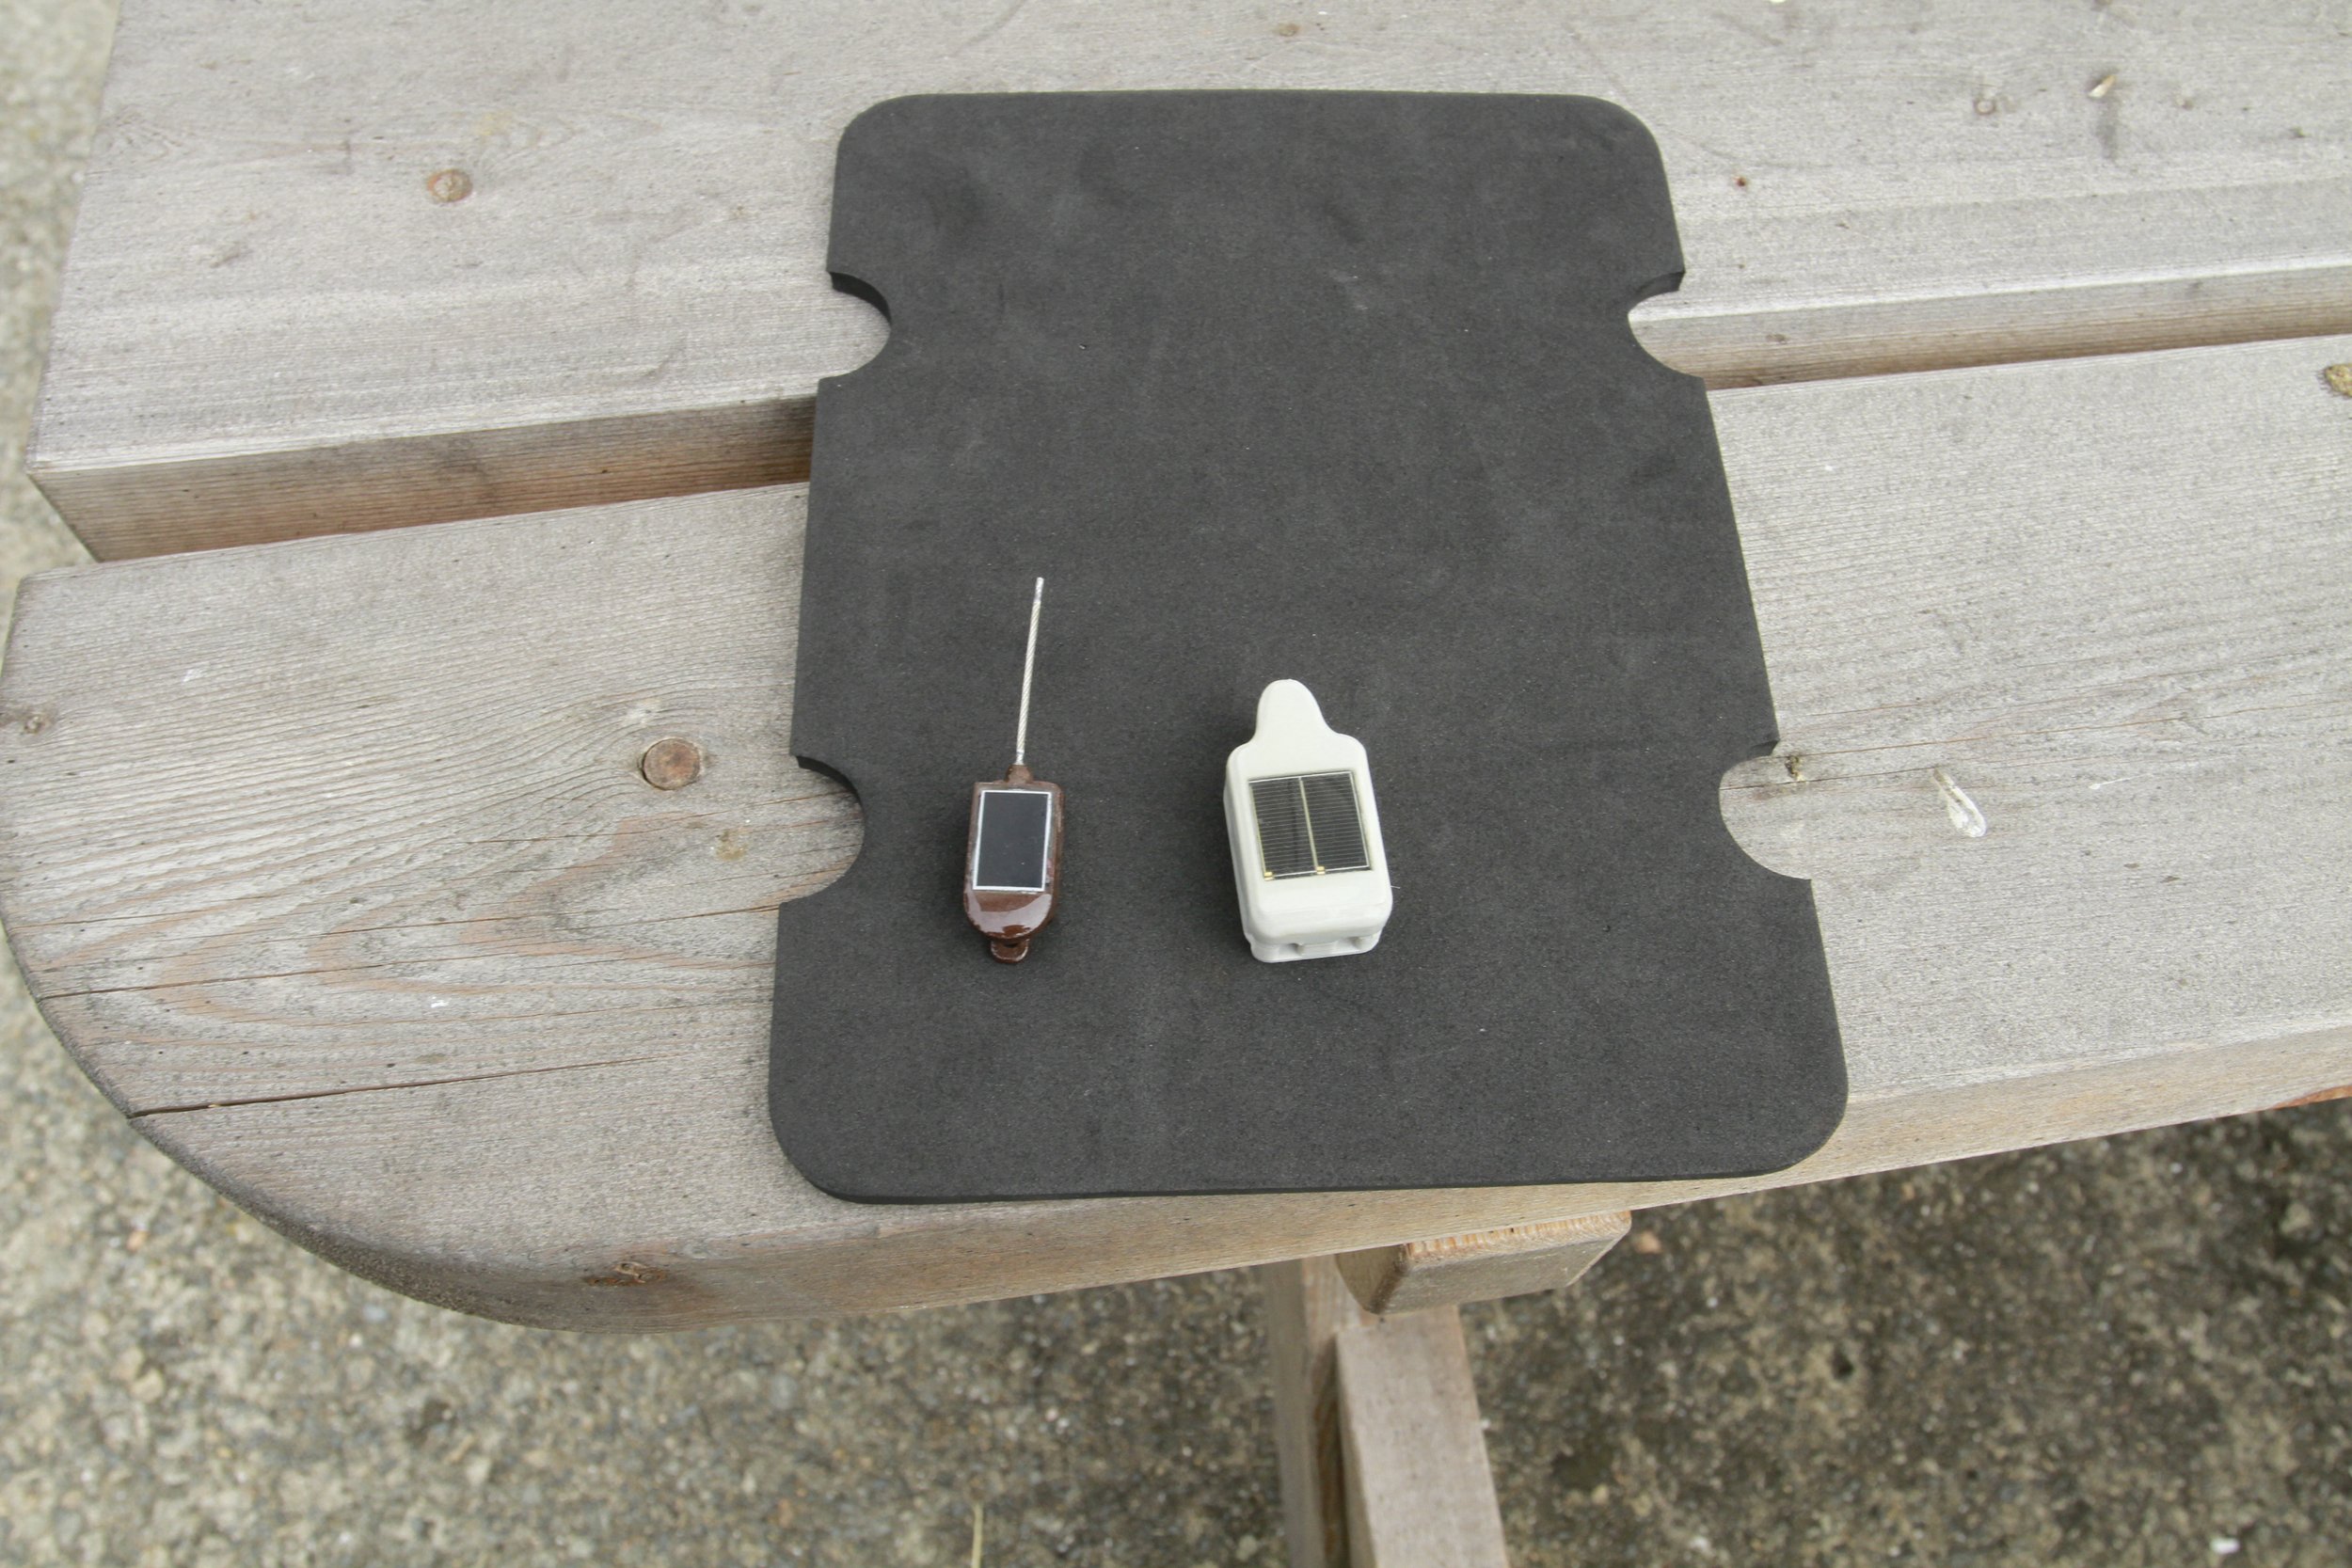 Exemples de puces GPS (taille 3 cm max)